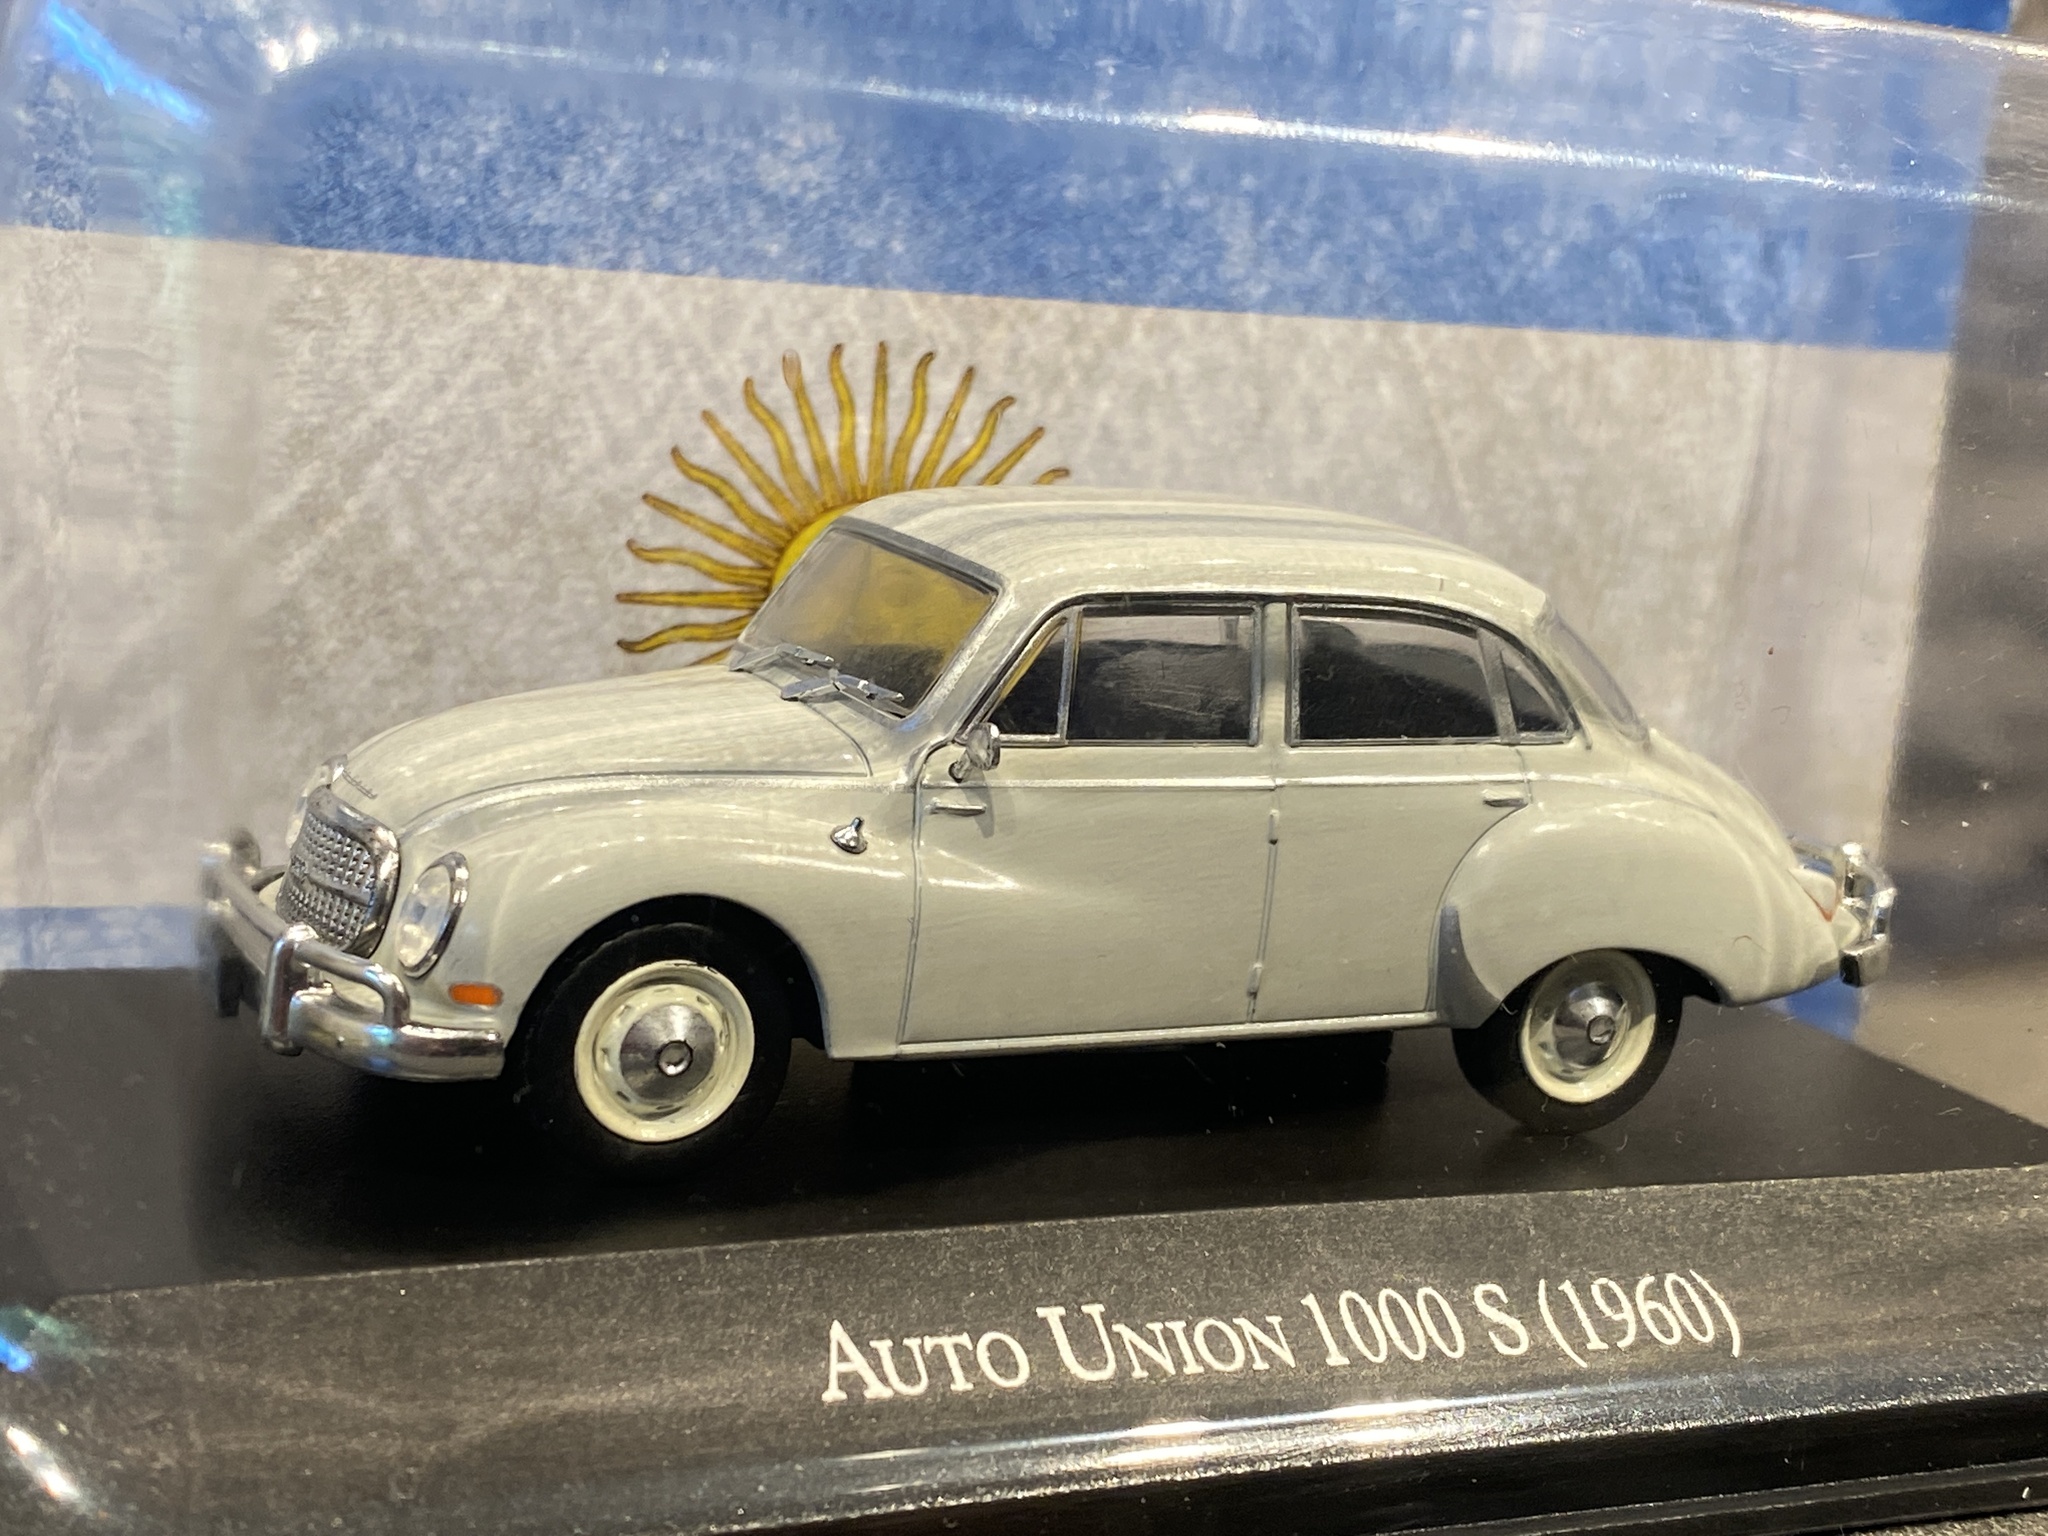 Skala 1/43: Auto Union 1000 S 60' från Rubbo